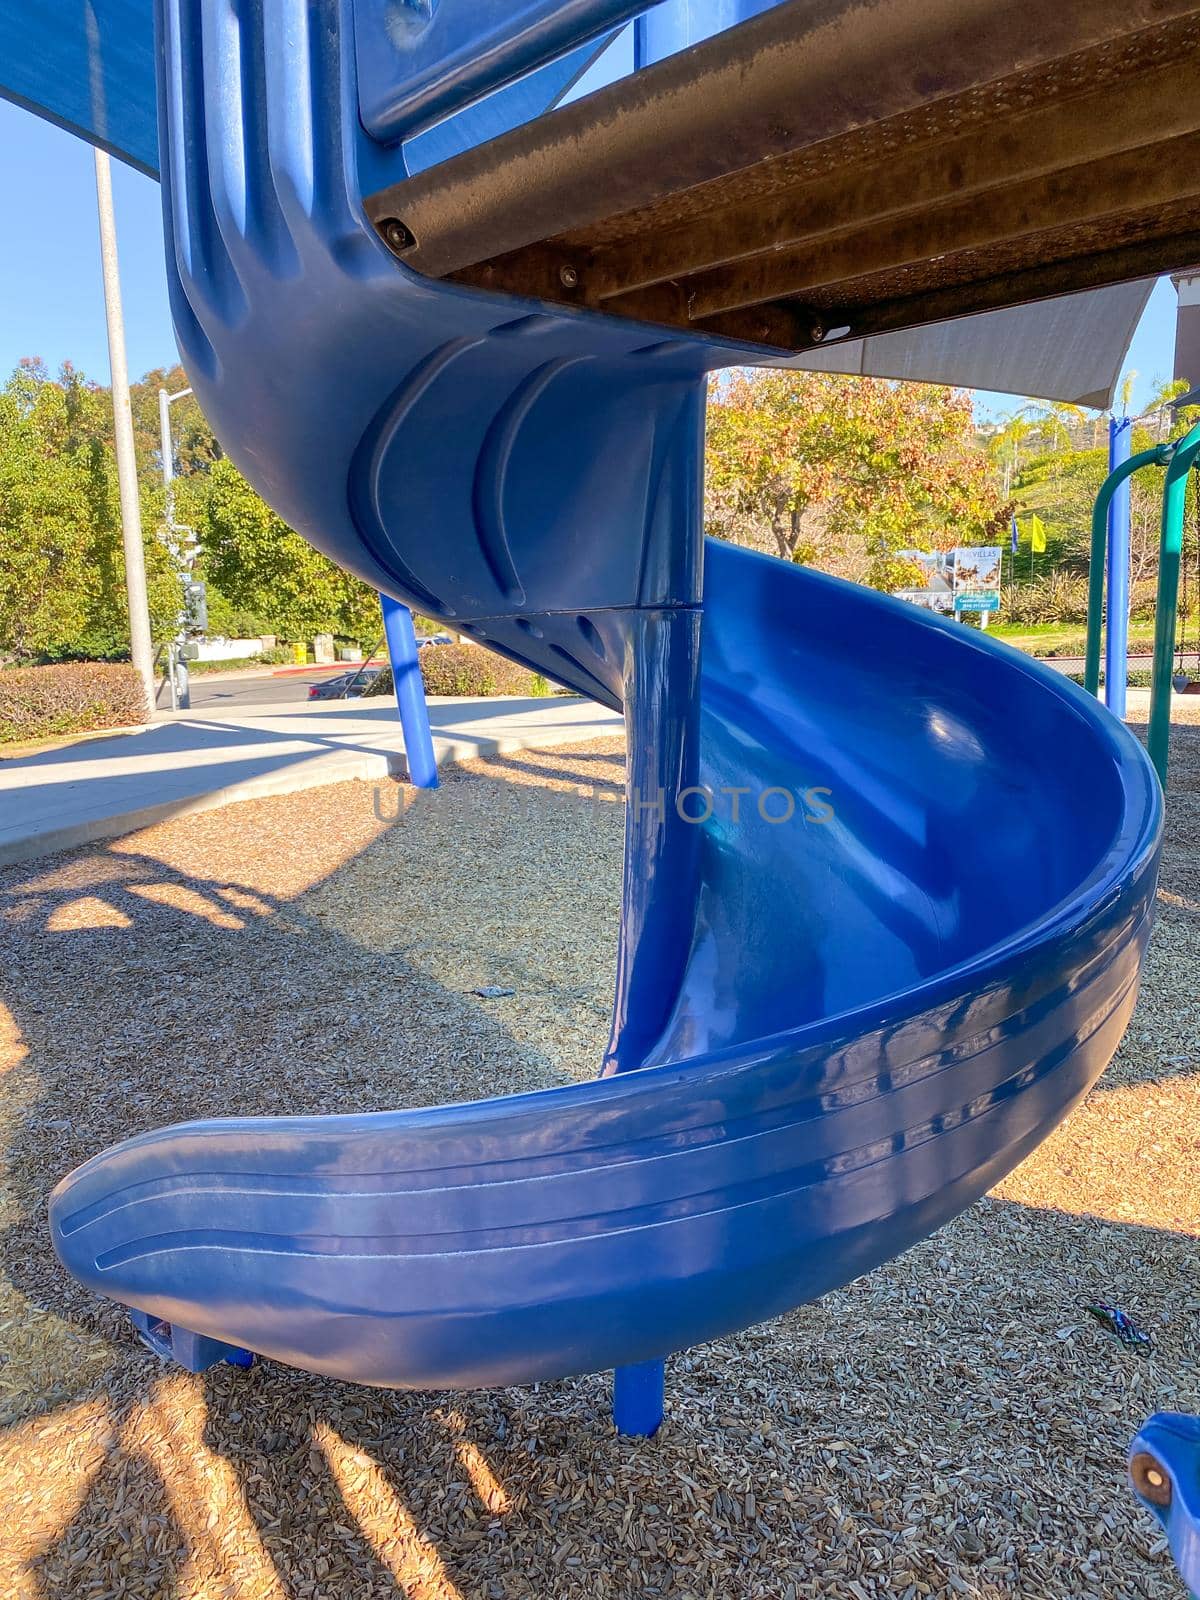 Slide at children playground activities in public park. Slide on modern playground. Urban neighborhood childhood concept. 